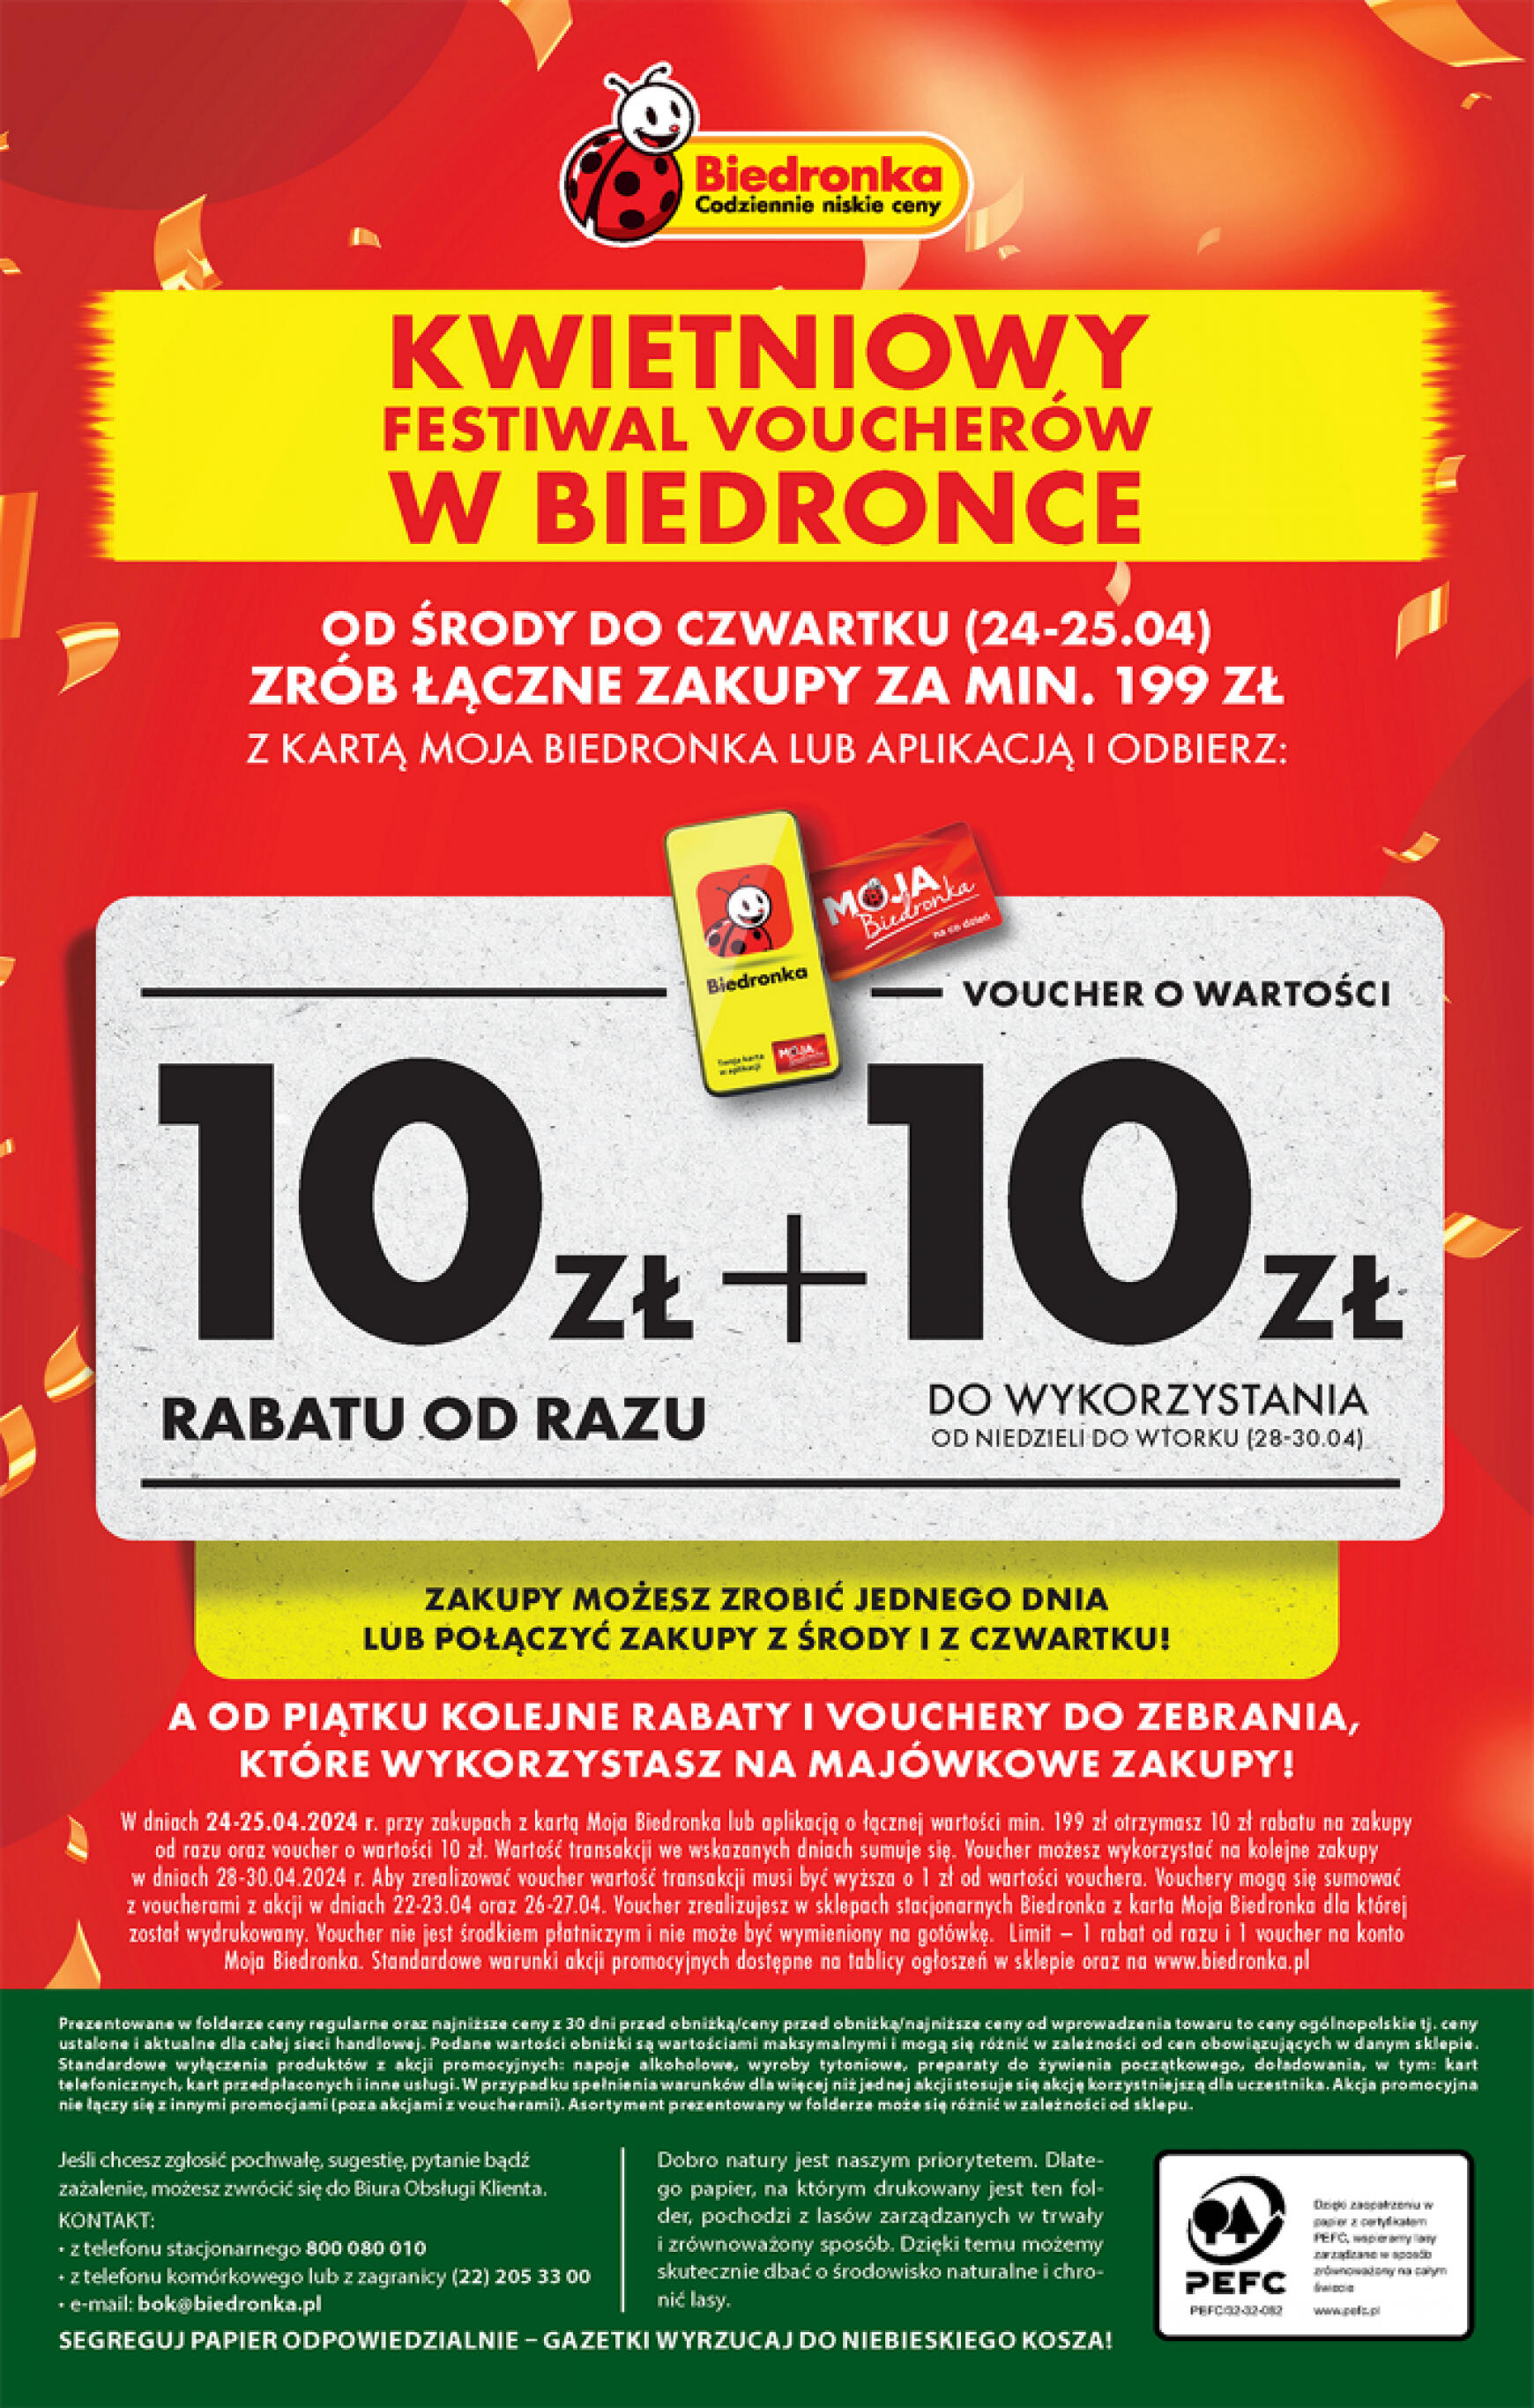 biedronka - Biedronka gazetka aktualna ważna od 24.04. - 28.04. - page: 26